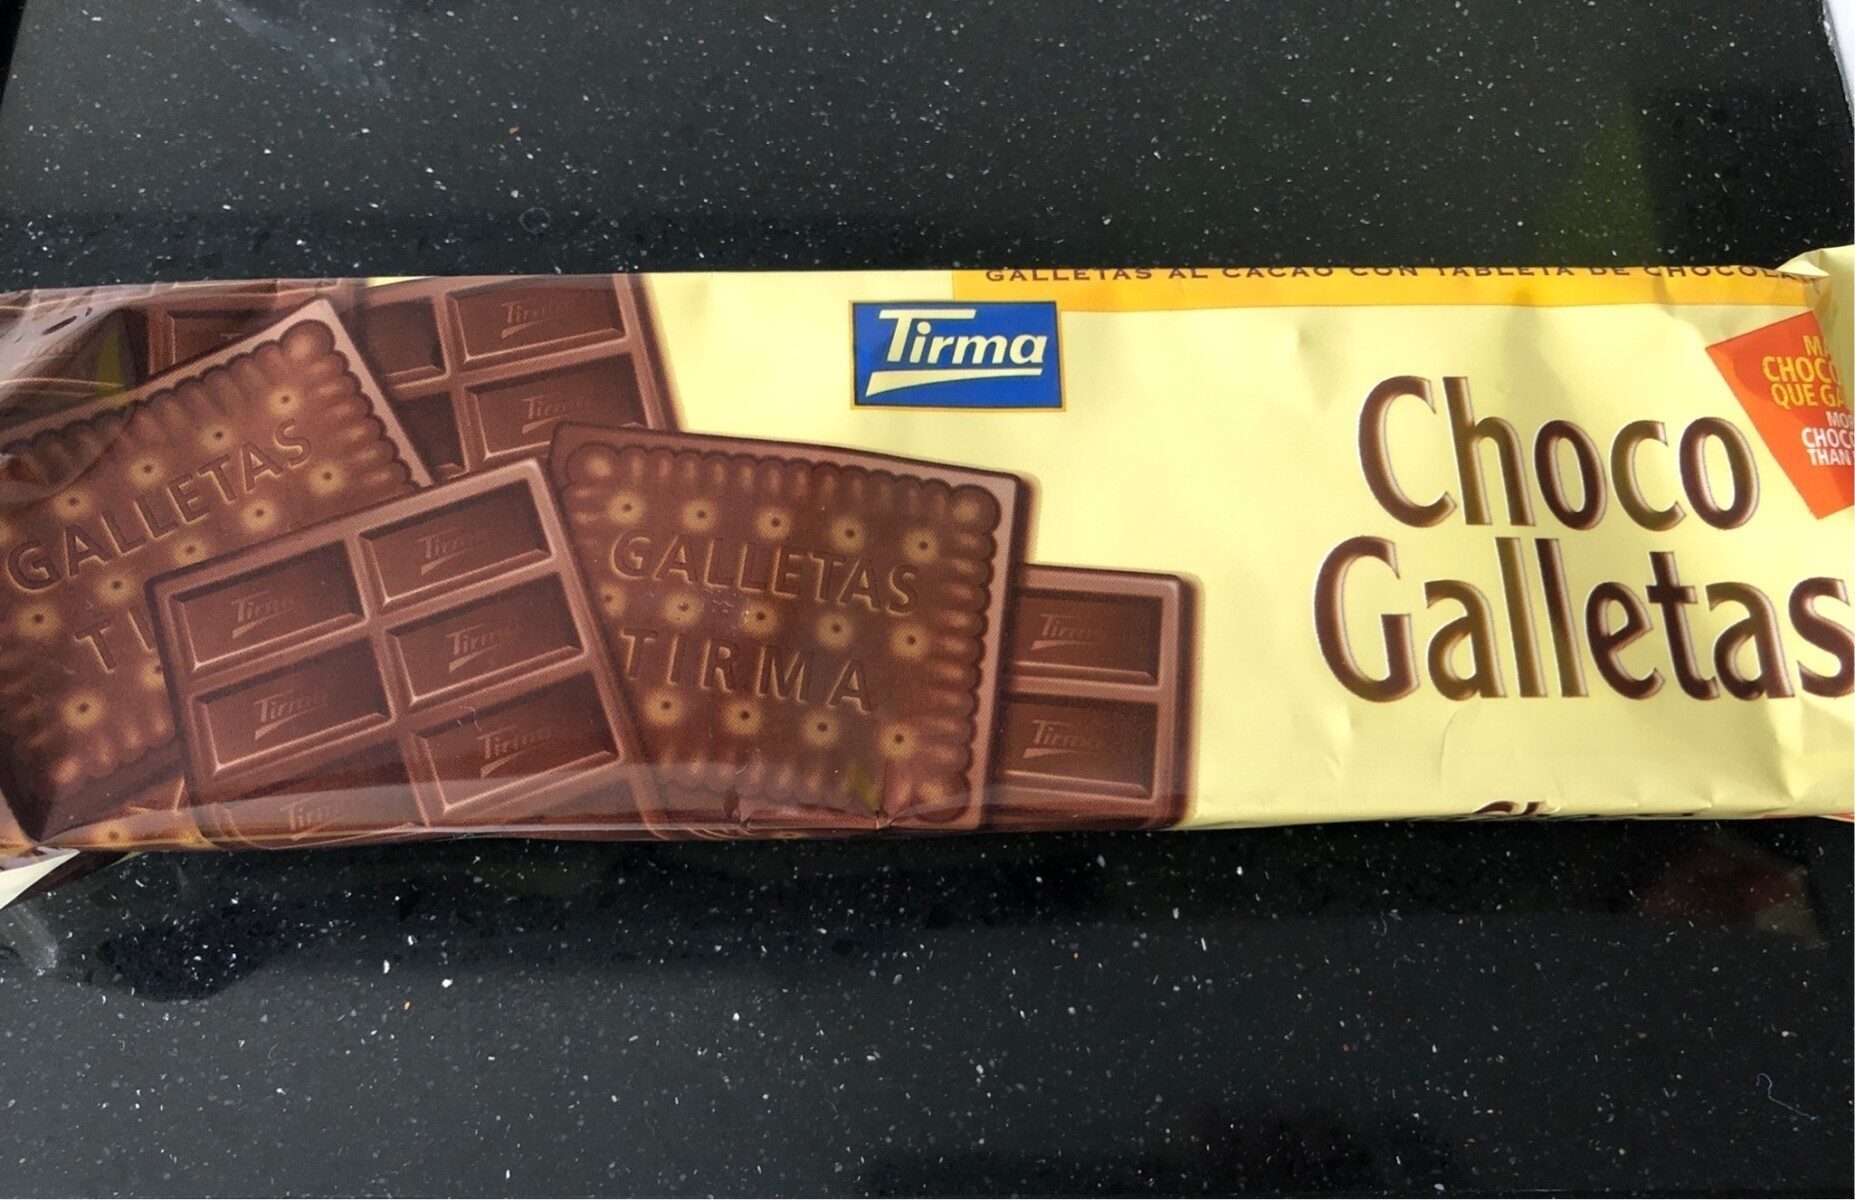 Choco Galletas - Product - es